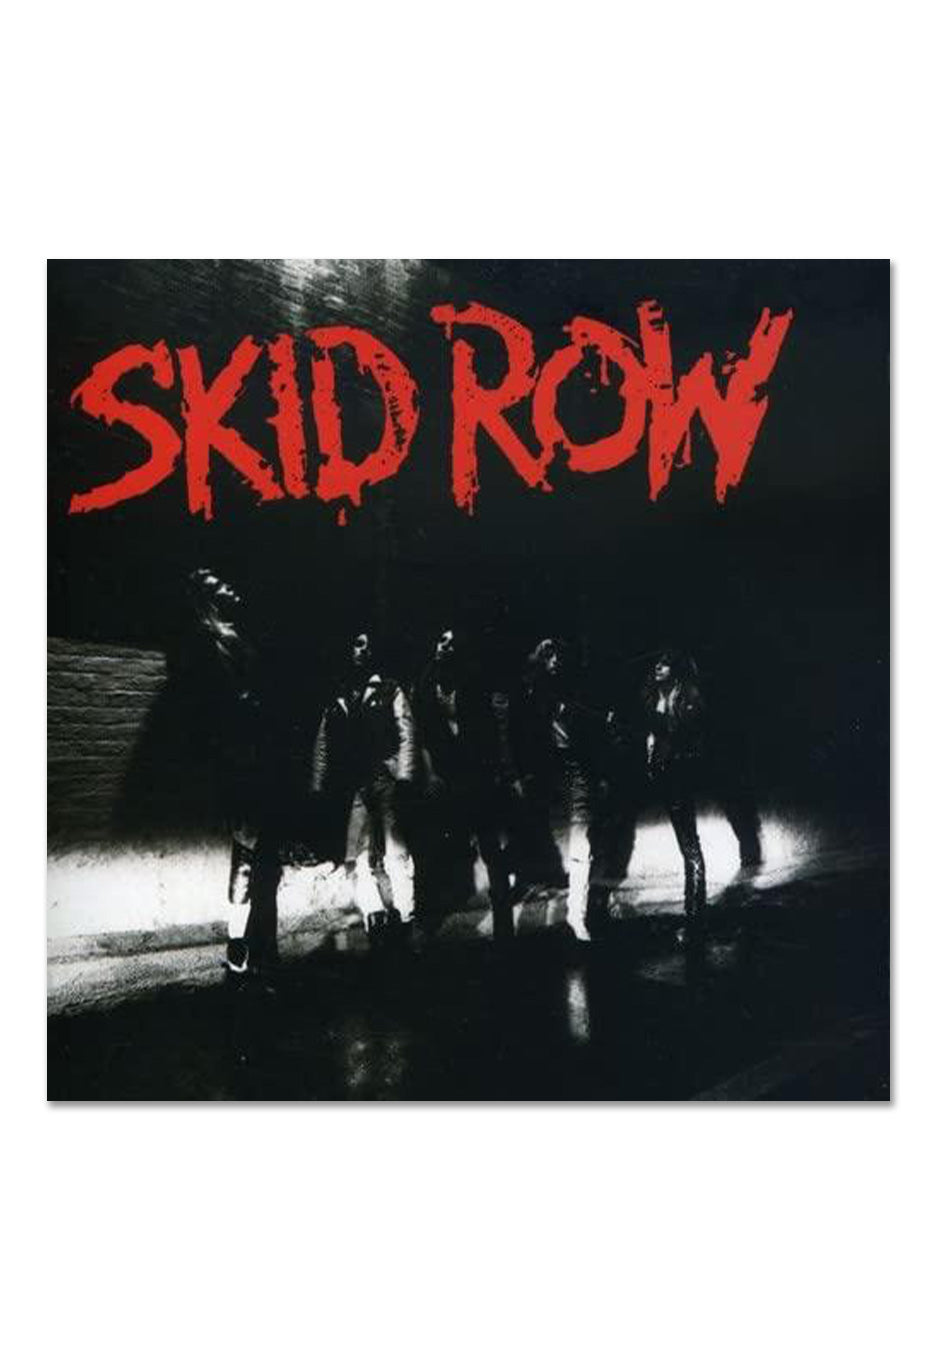 Skid Row - Skid Row Red/Black - Marbled Vinyl